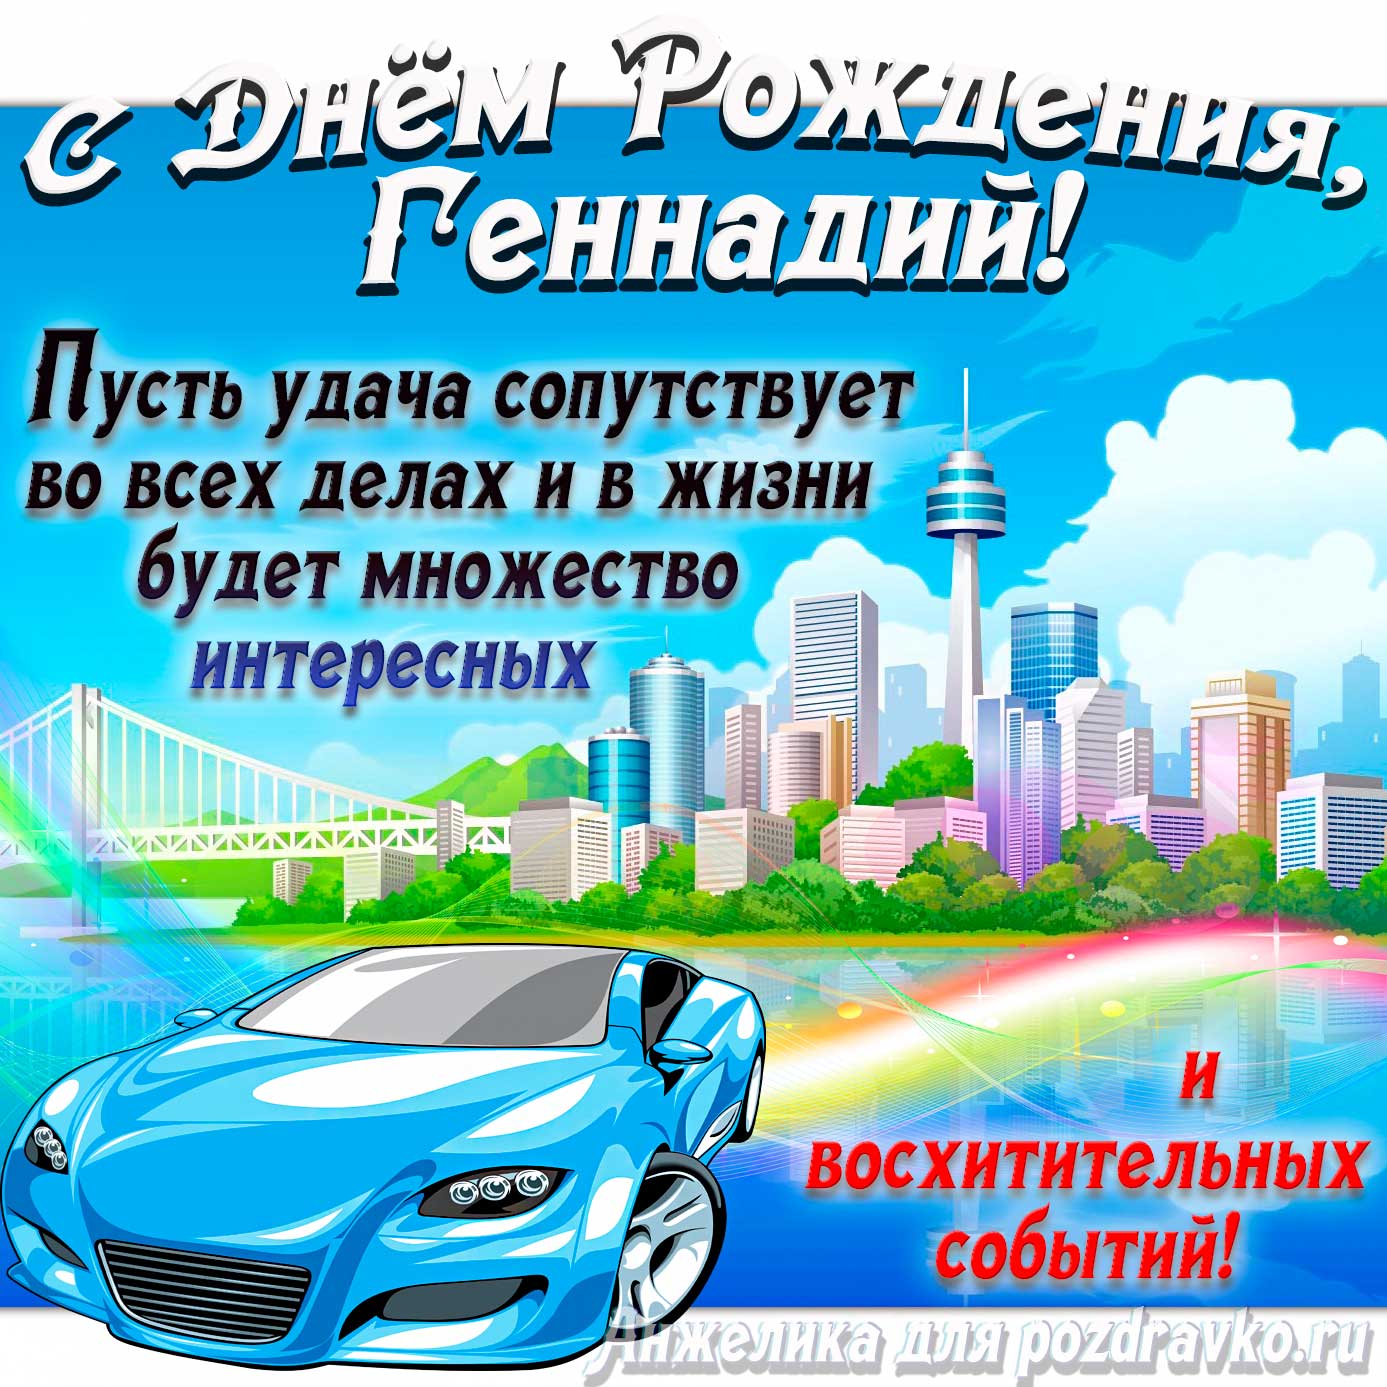 Открытка - с Днём Рождения Геннадий с голубой машиной и пожеланием. Скачать бесплатно или отправить картинку.